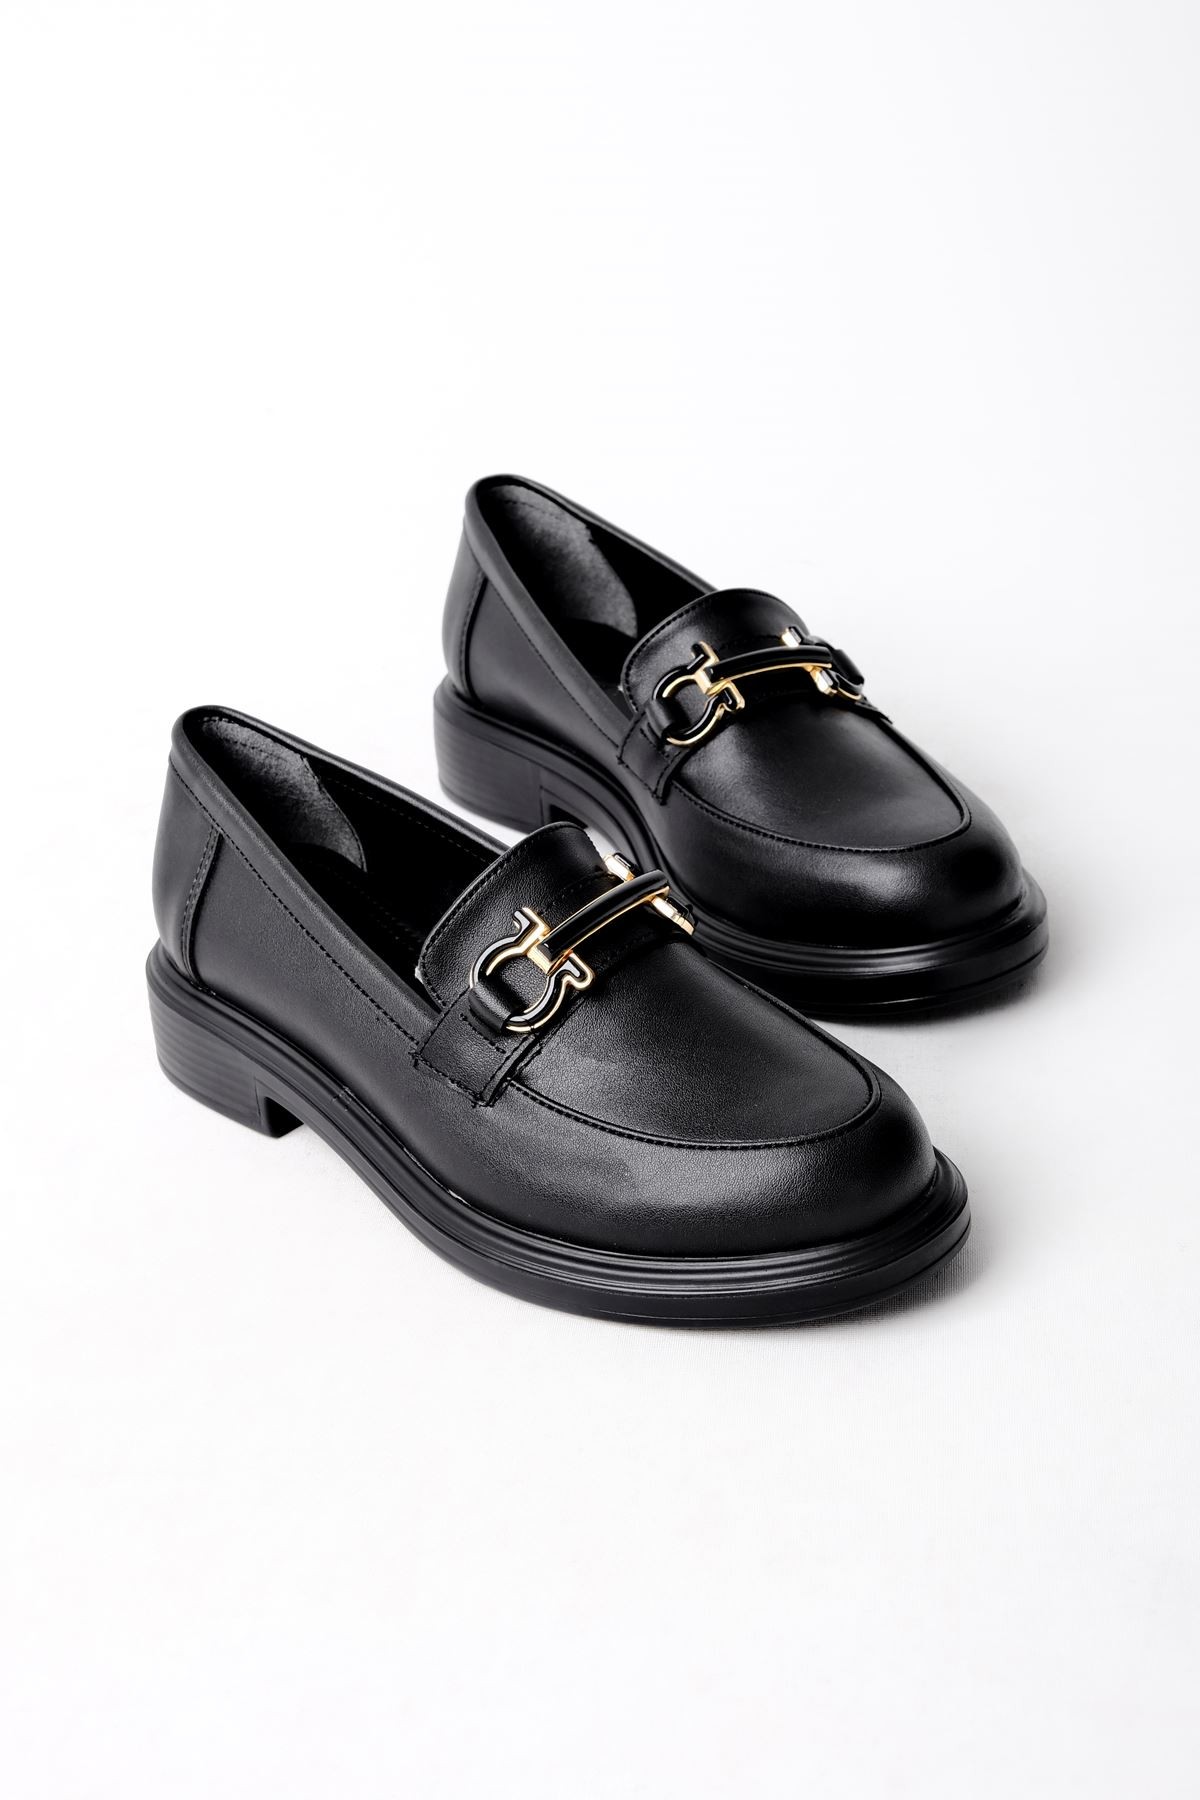 Capitol Düz Metal Loafer Kadın Ayakkabı B2991 - Siyah